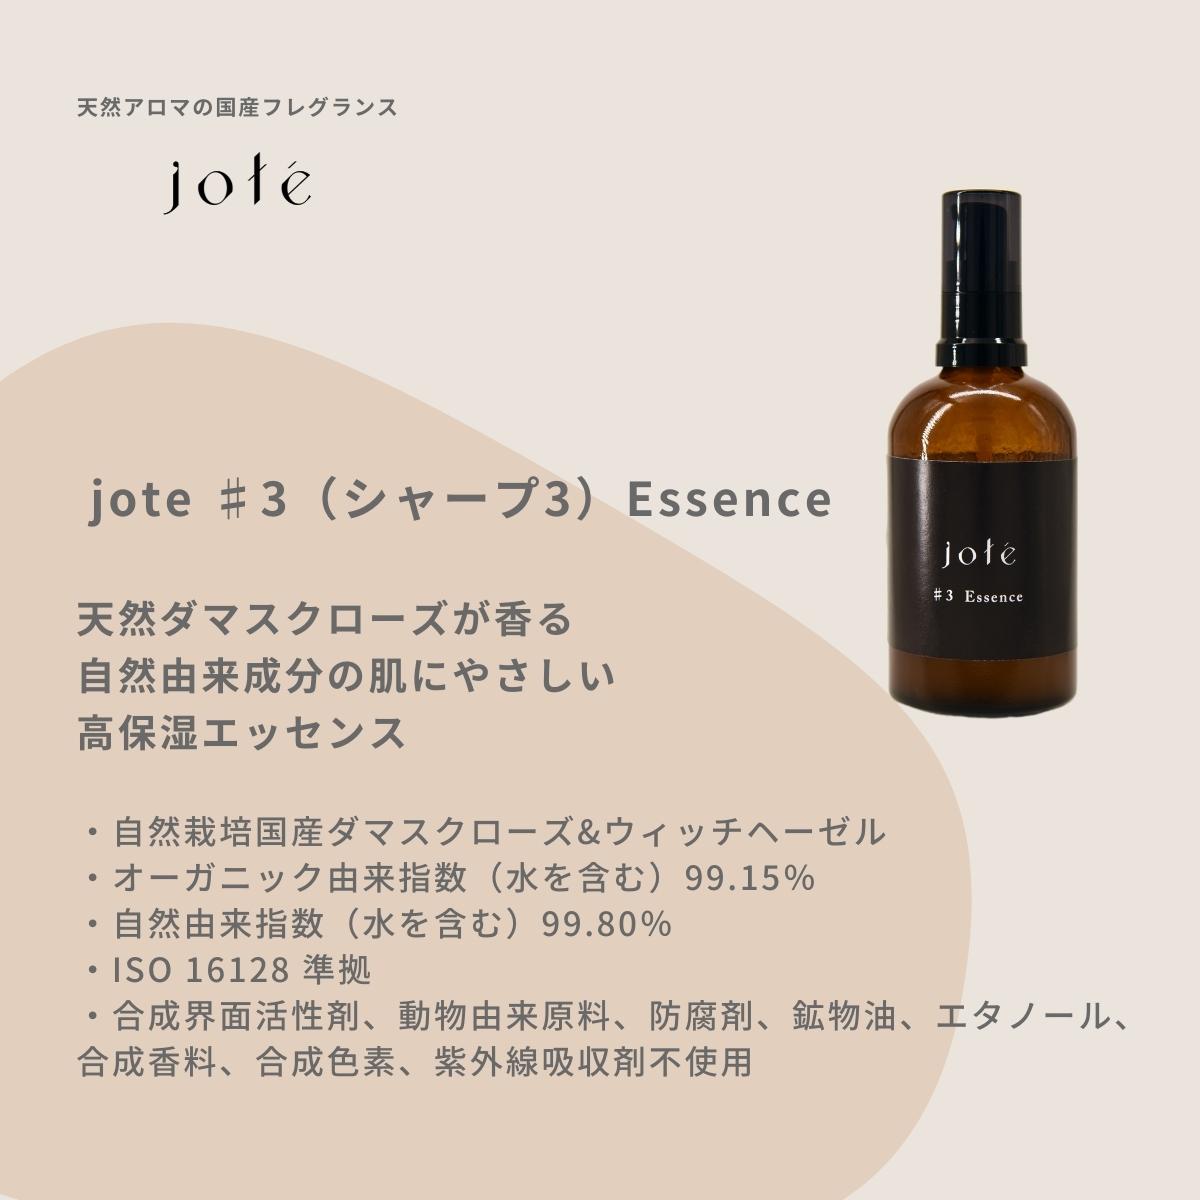 jote ♯3（シャープ３）Essence 100ml《ダマスクローズの香り》美容液